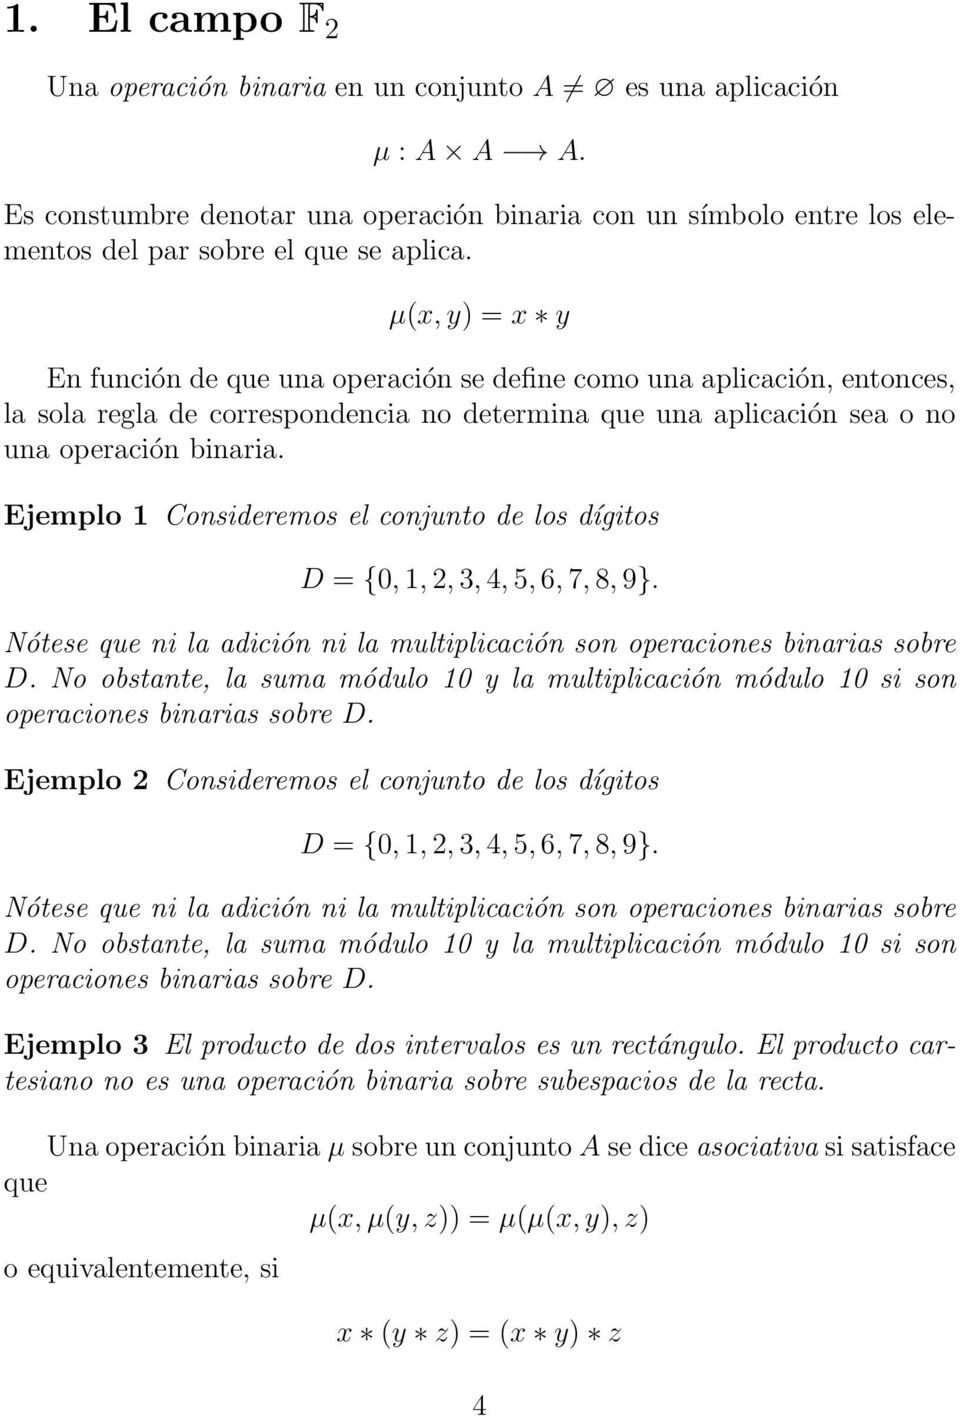 Ejemplo 1 Consideremos el conjunto de los dígitos D = {0, 1, 2, 3, 4, 5, 6, 7, 8, 9}. Nótese que ni la adición ni la multiplicación son operaciones binarias sobre D.